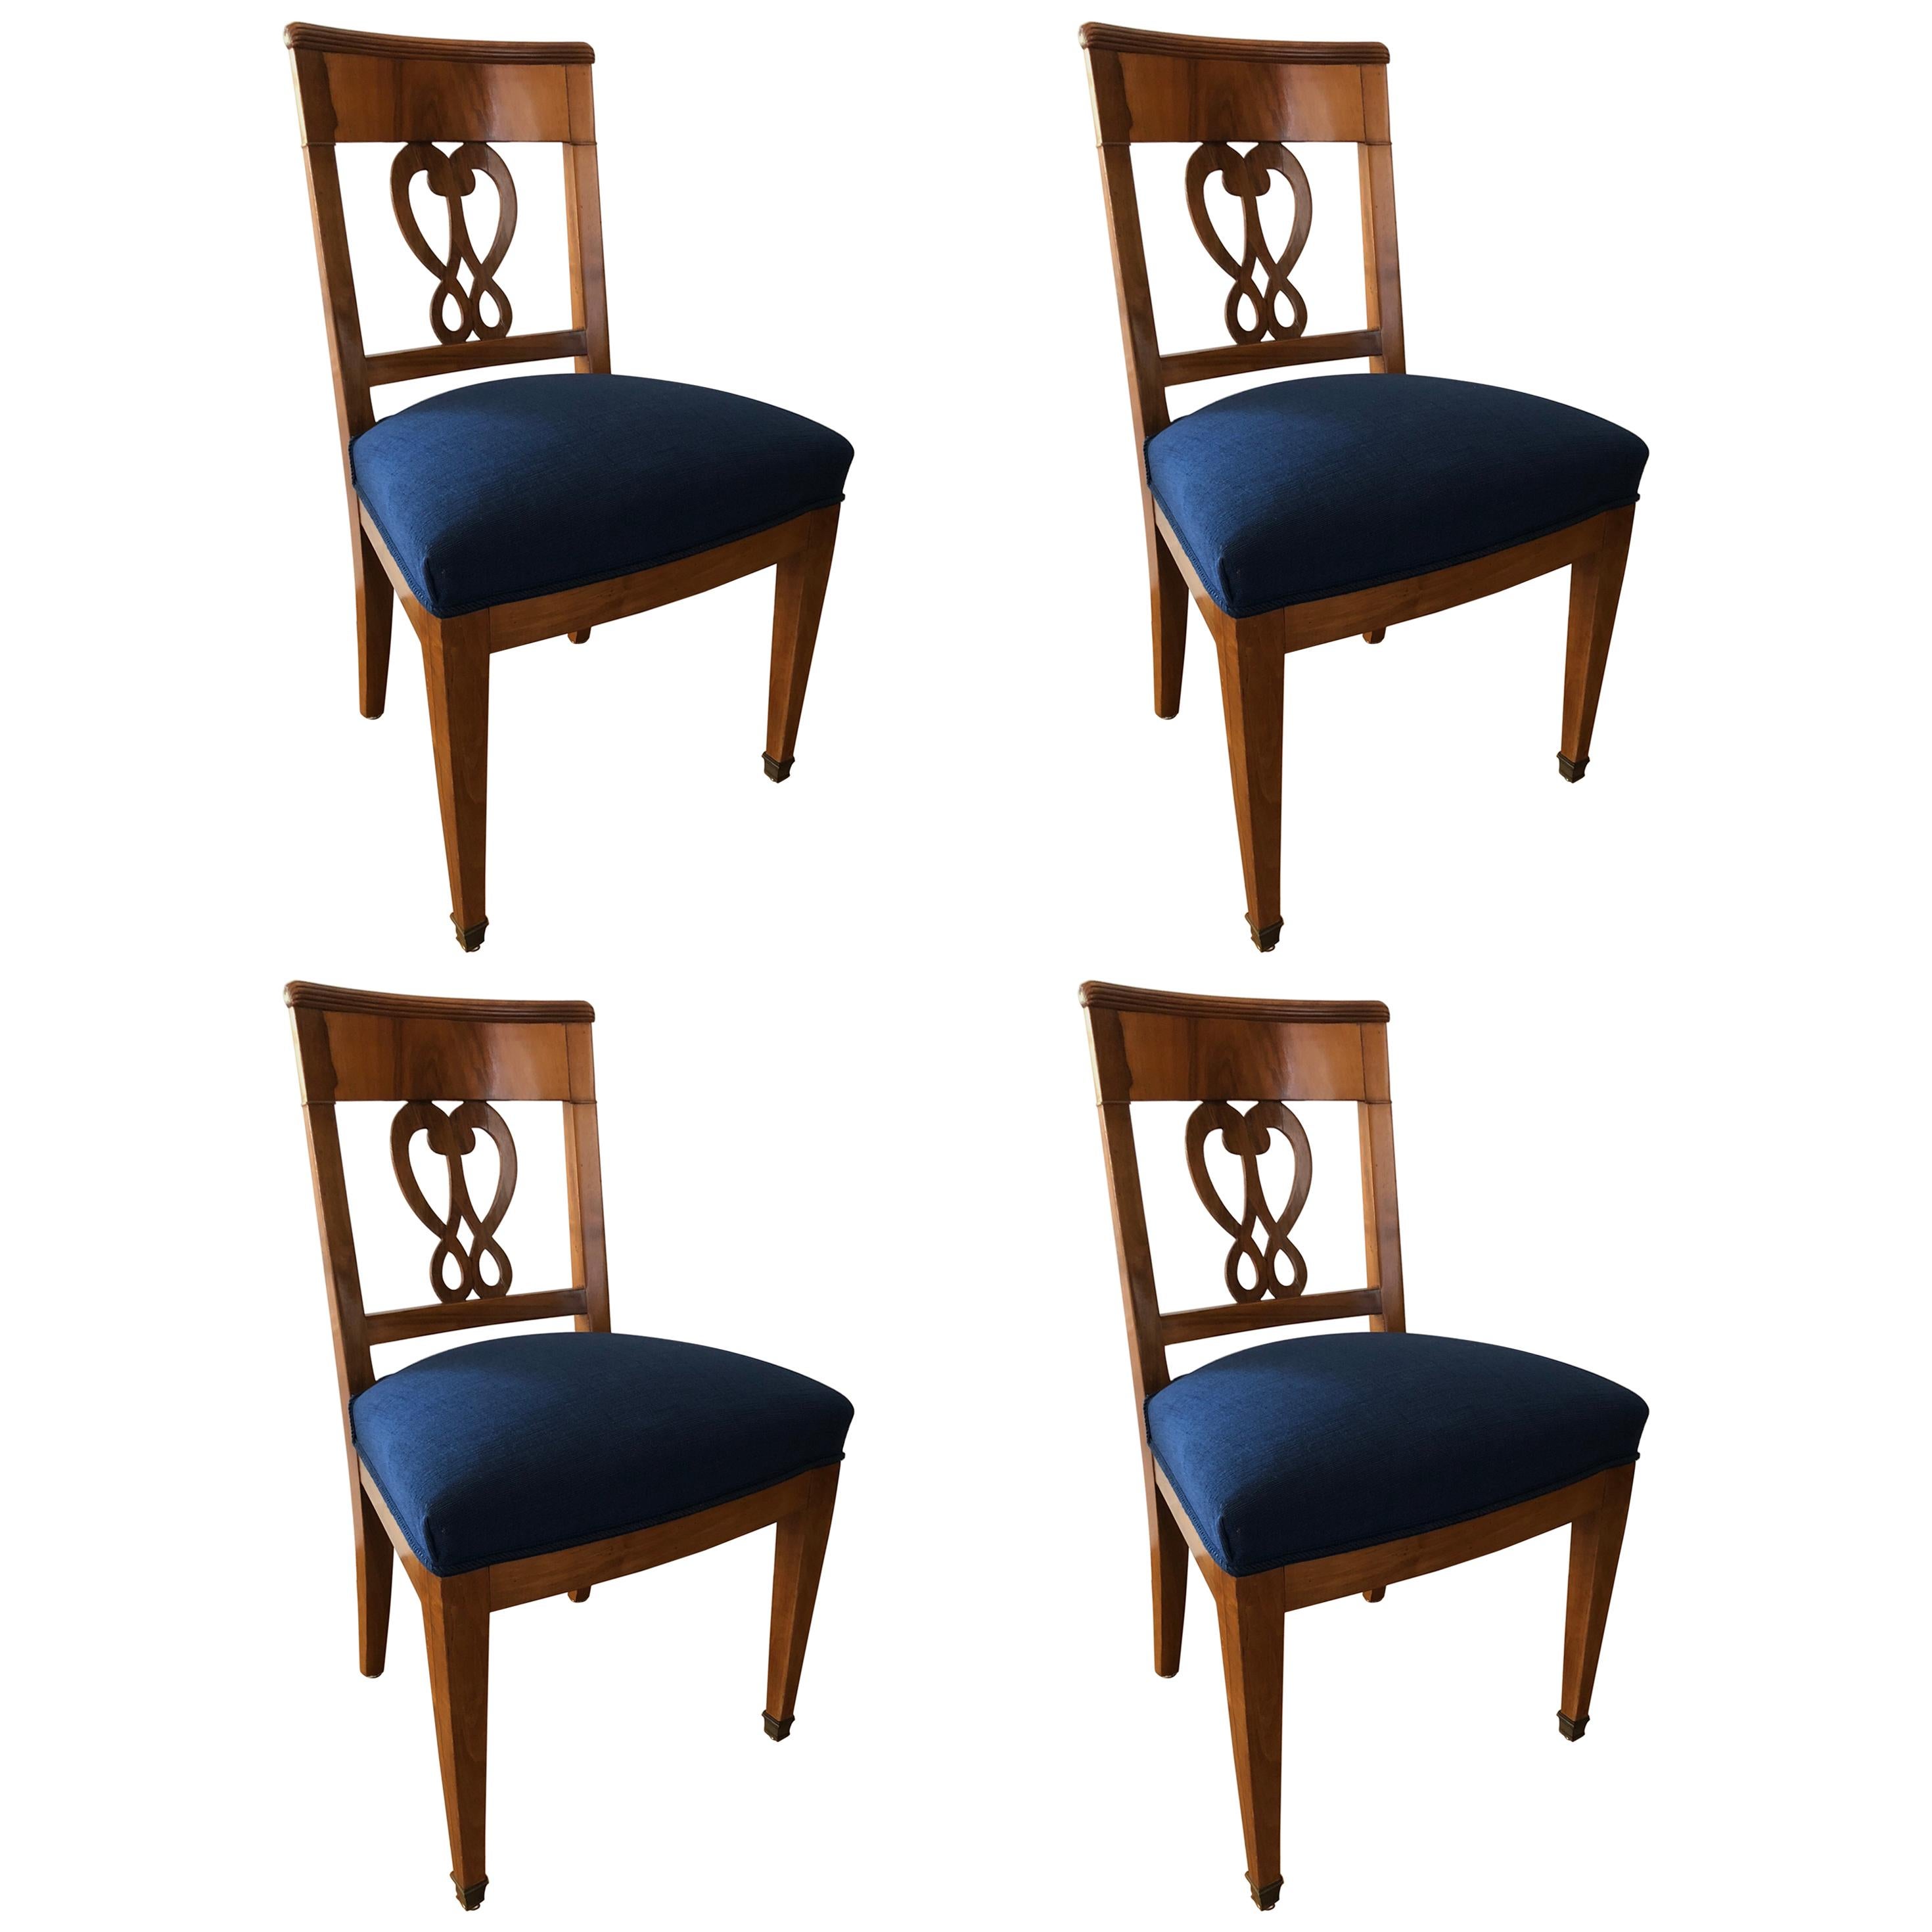 Ensemble de quatre chaises Biedermeier, Suisse, datant d'environ 1820-1830